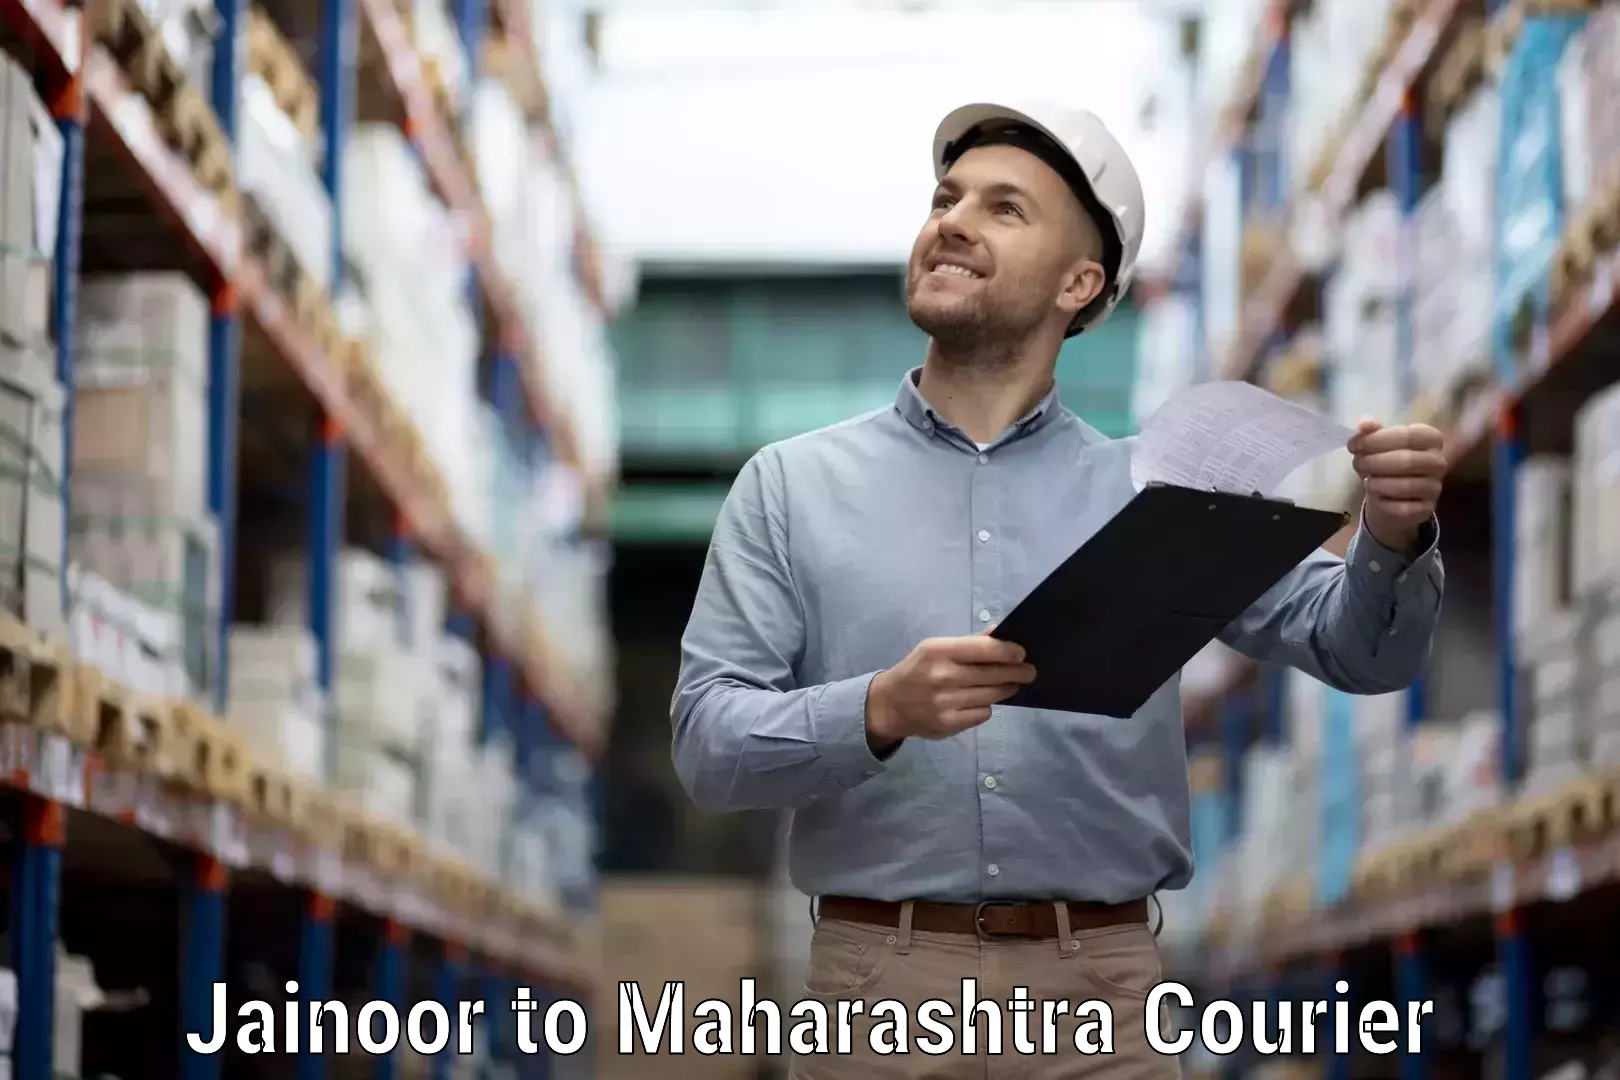 Courier service efficiency in Jainoor to Mahad